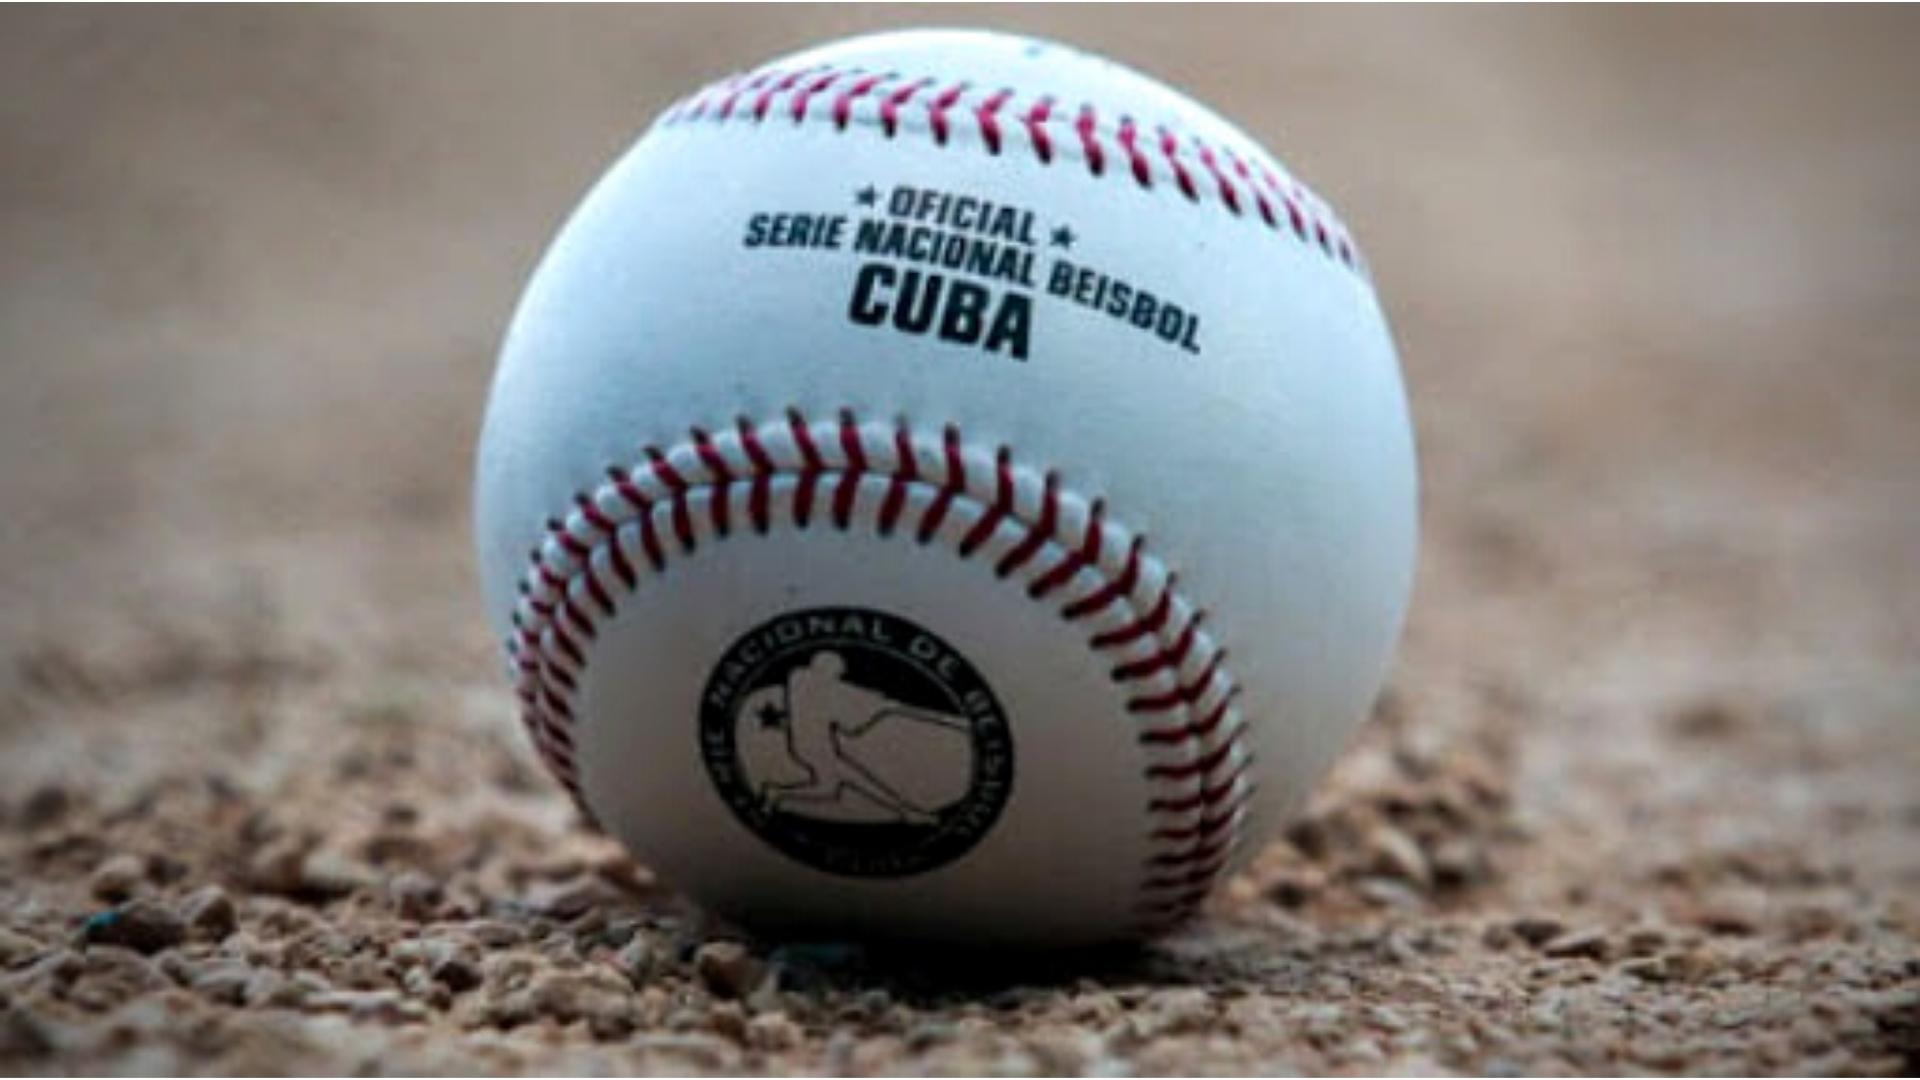 Pelota oficial de la Serie Nacional de Béisbol, Cuba.